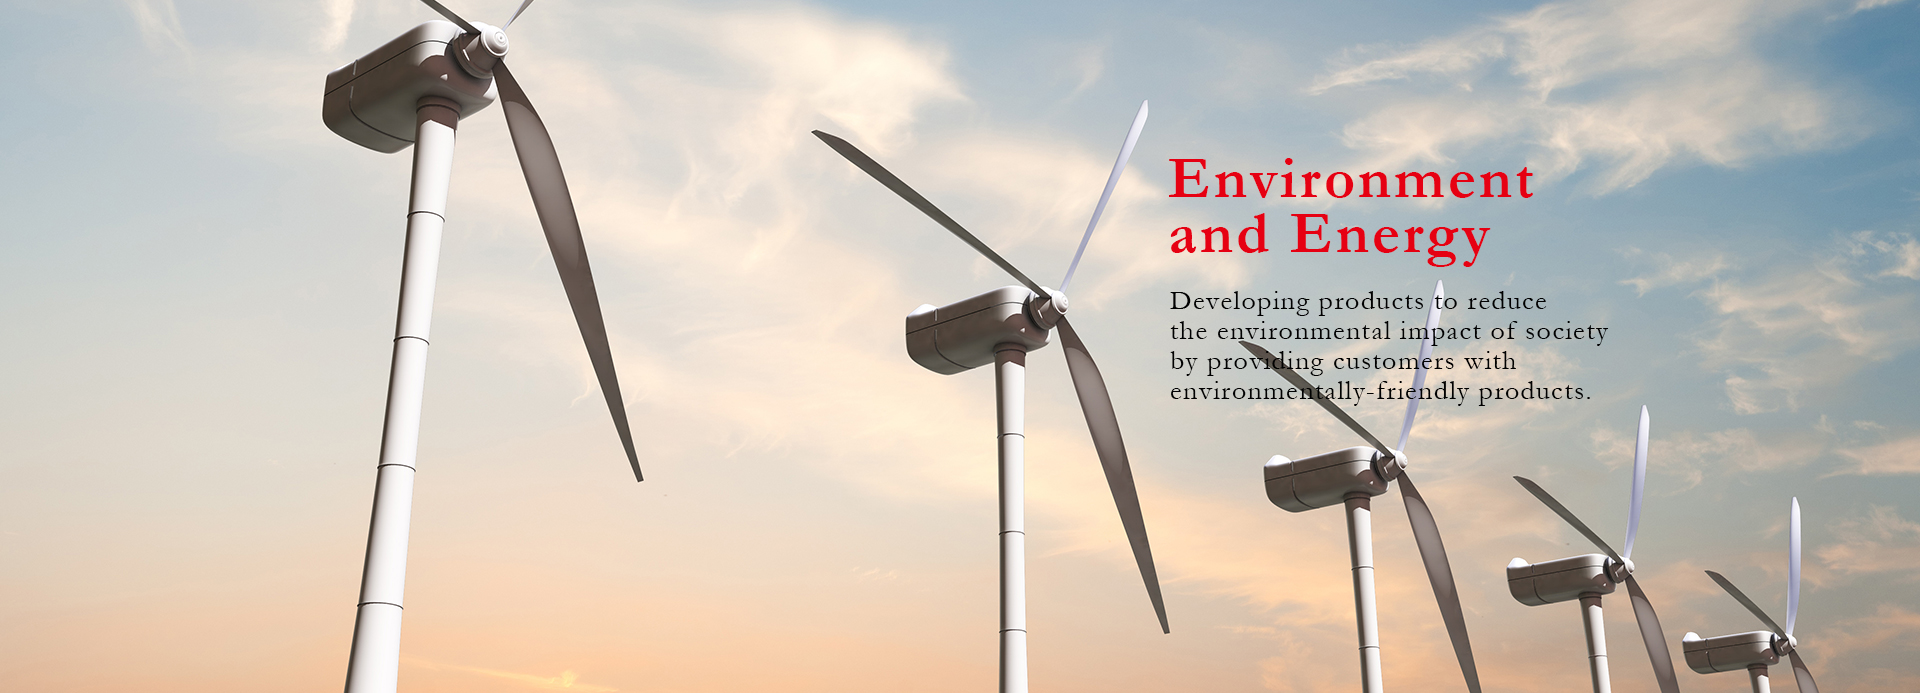 環境・エネルギー | 環境配慮型製品をお客様に提供することにより、社会全体の環境負荷が低減できるよう製品開発を進めています。